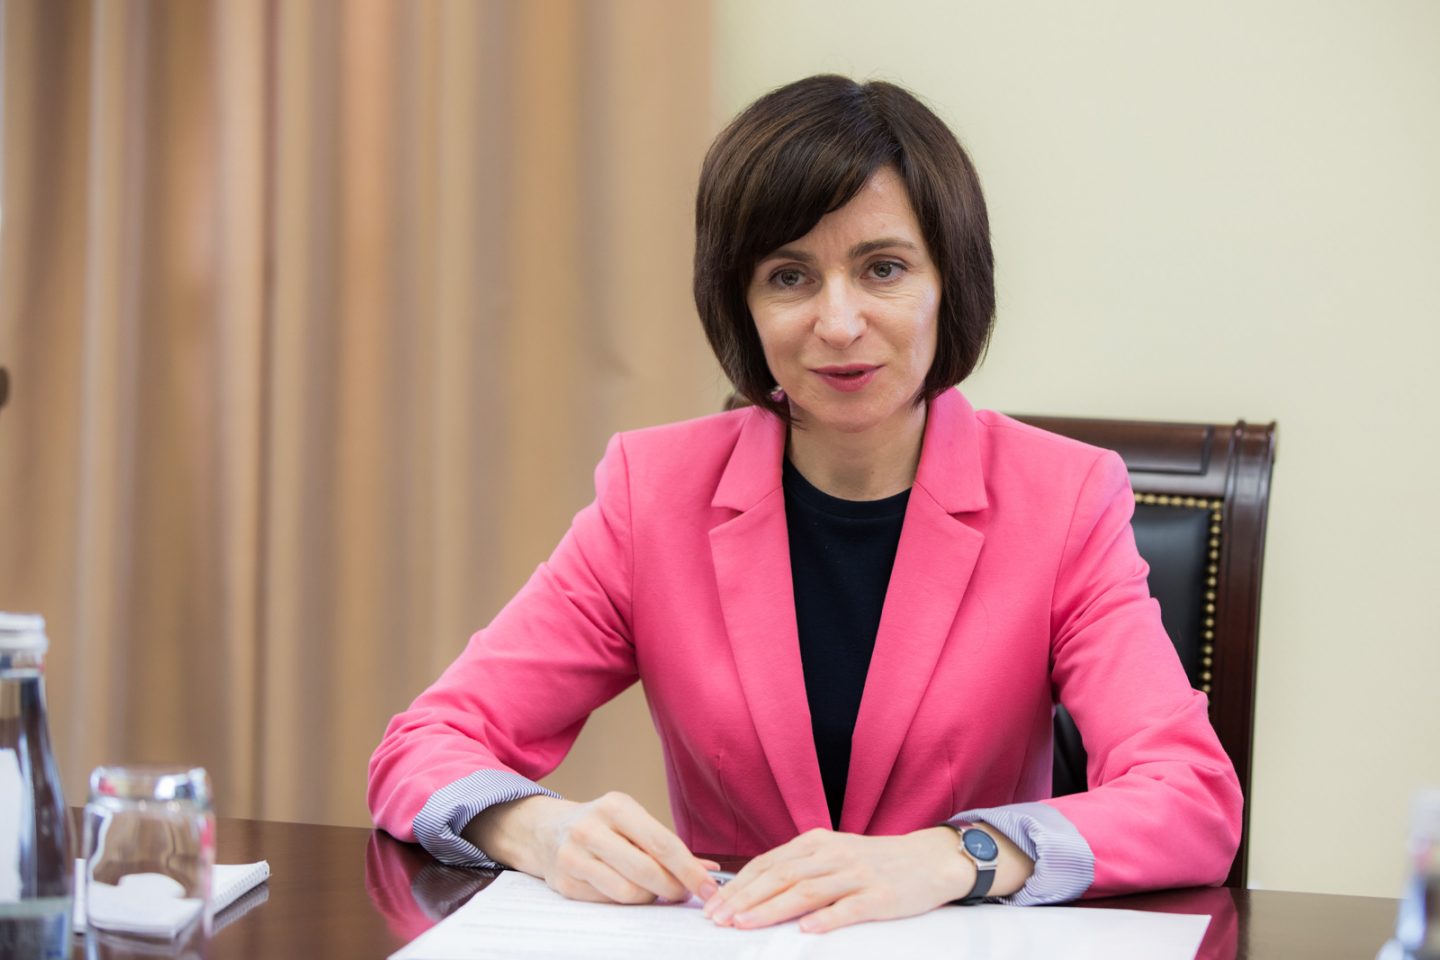 Partenerii politici nu mai cred în Maia Sandu. PPDA a aprobat candidatura lui Andrei Năstase la funcția de președinte al Republicii Moldova